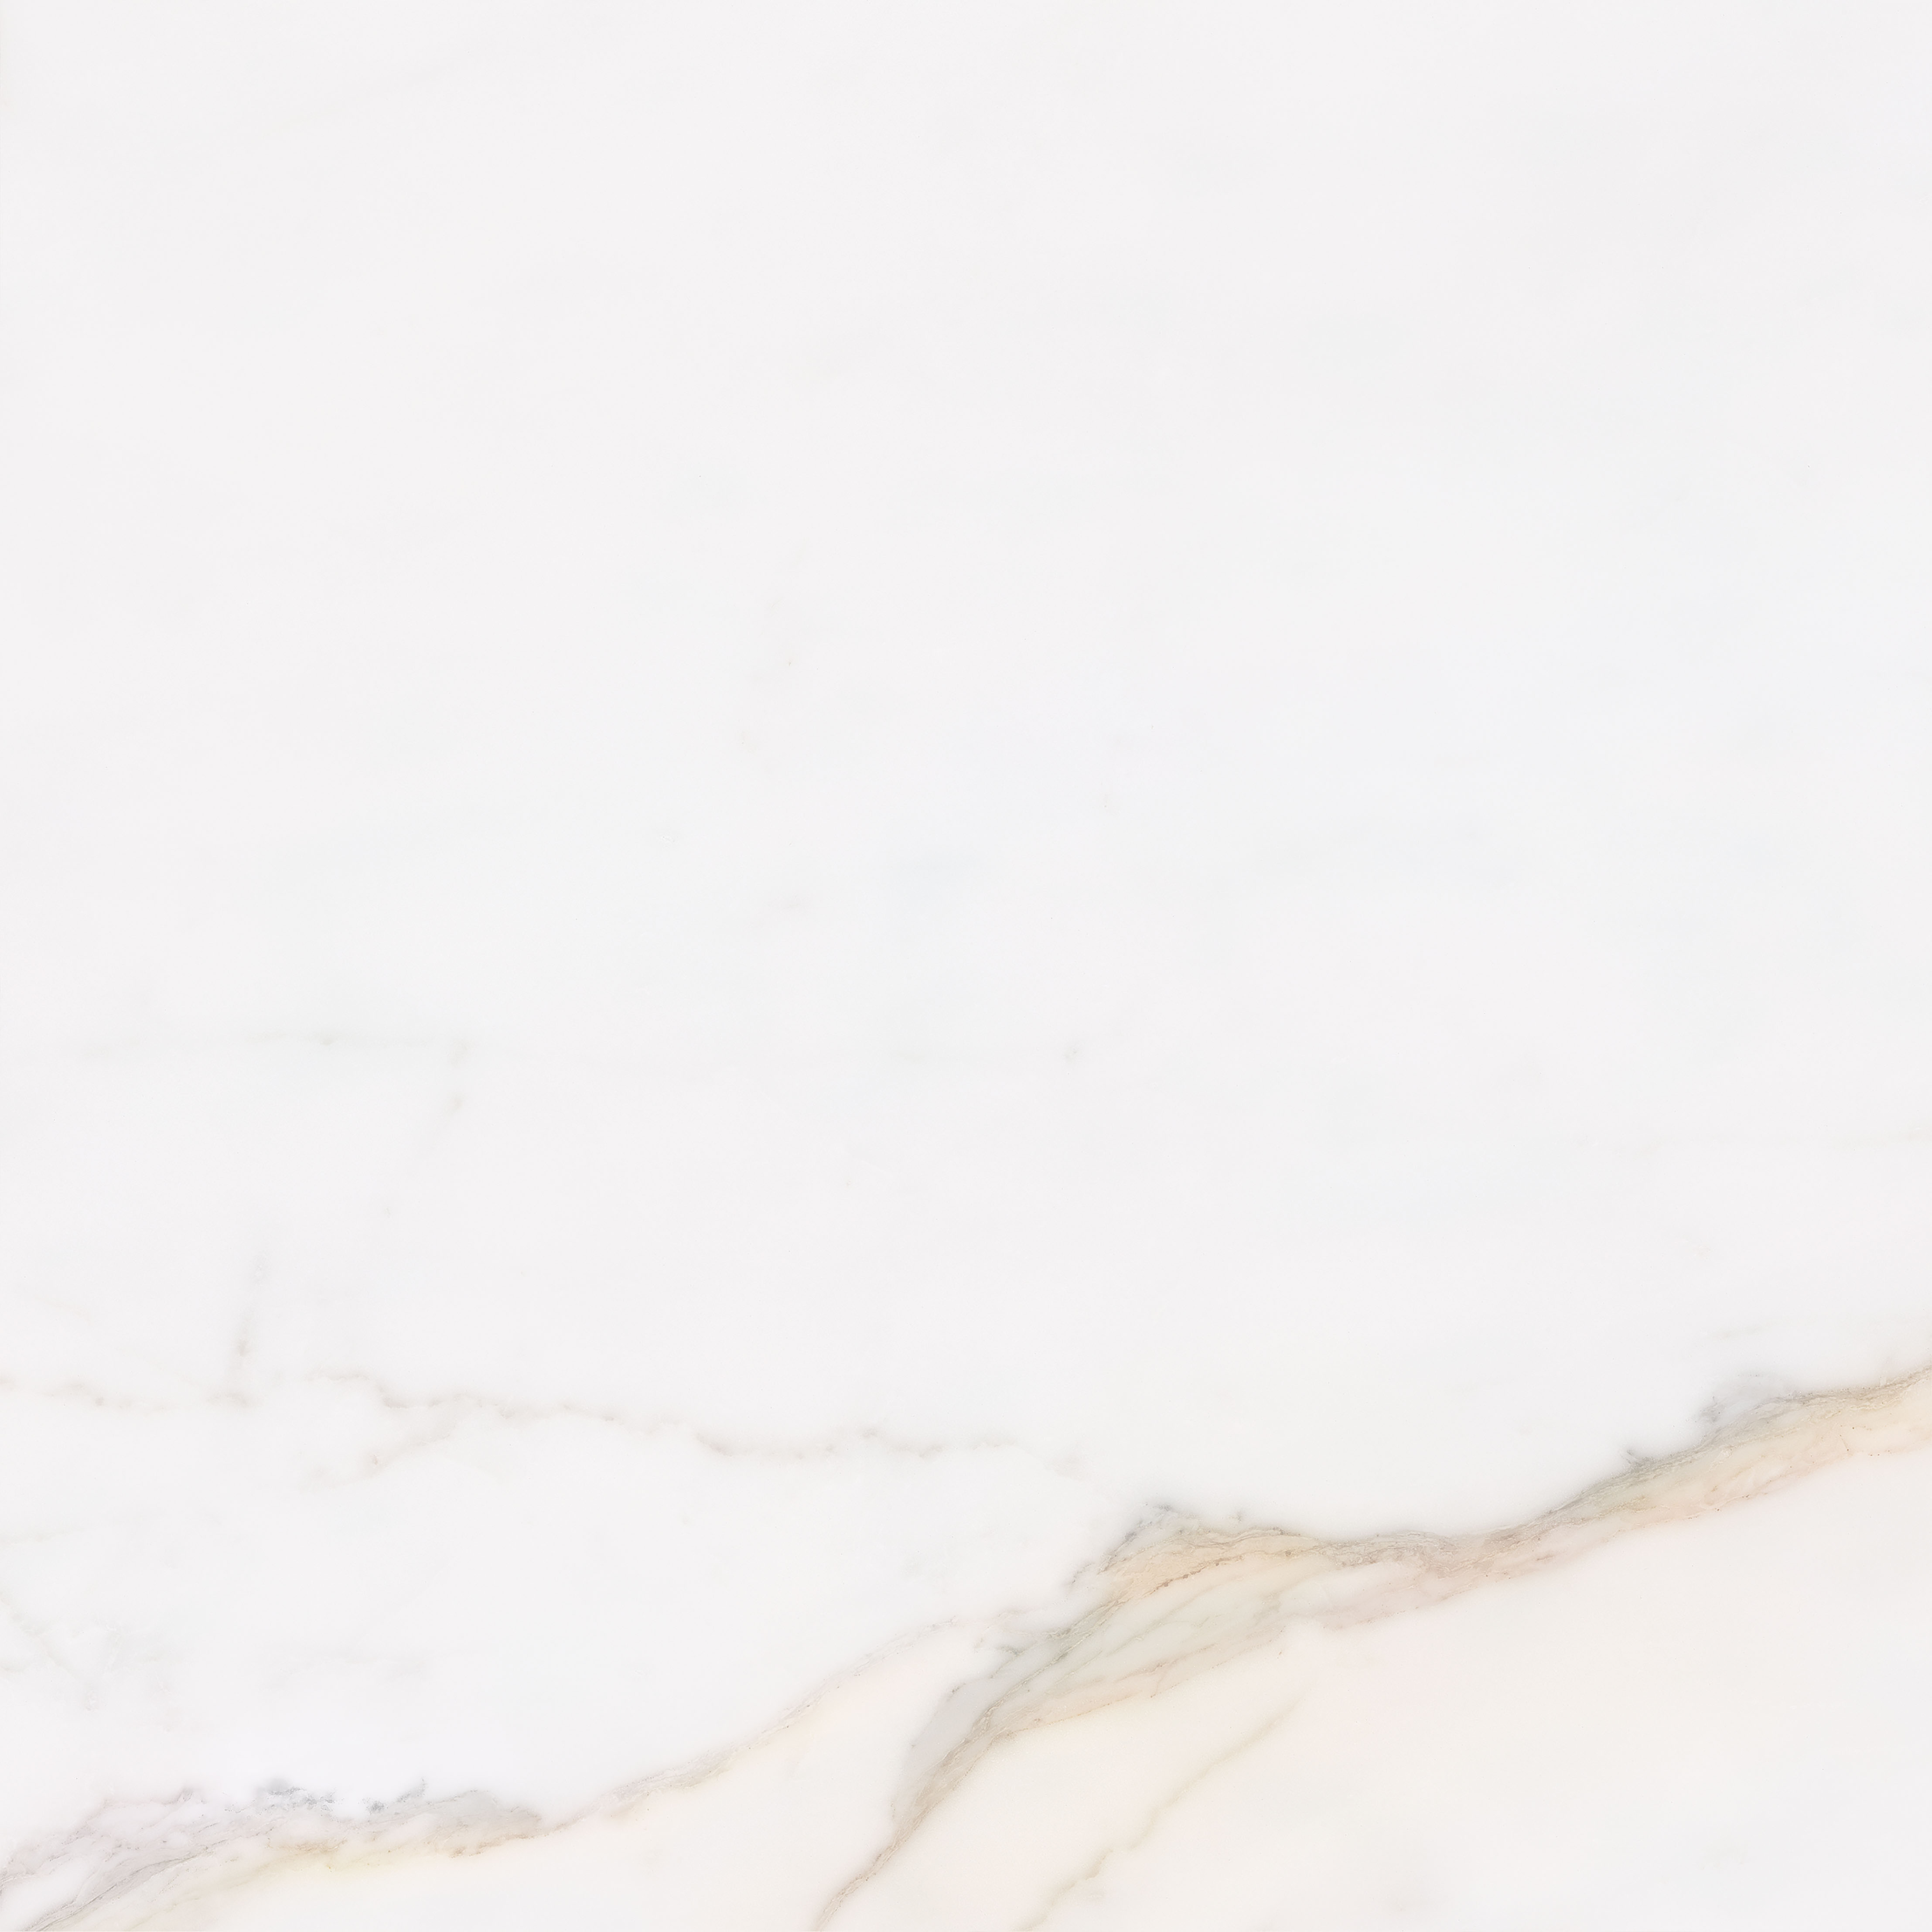 Vanezia Gres Kalmar Bodenfliesen Marmoroptik Weiß glänzend 75x75 cm rekt. 